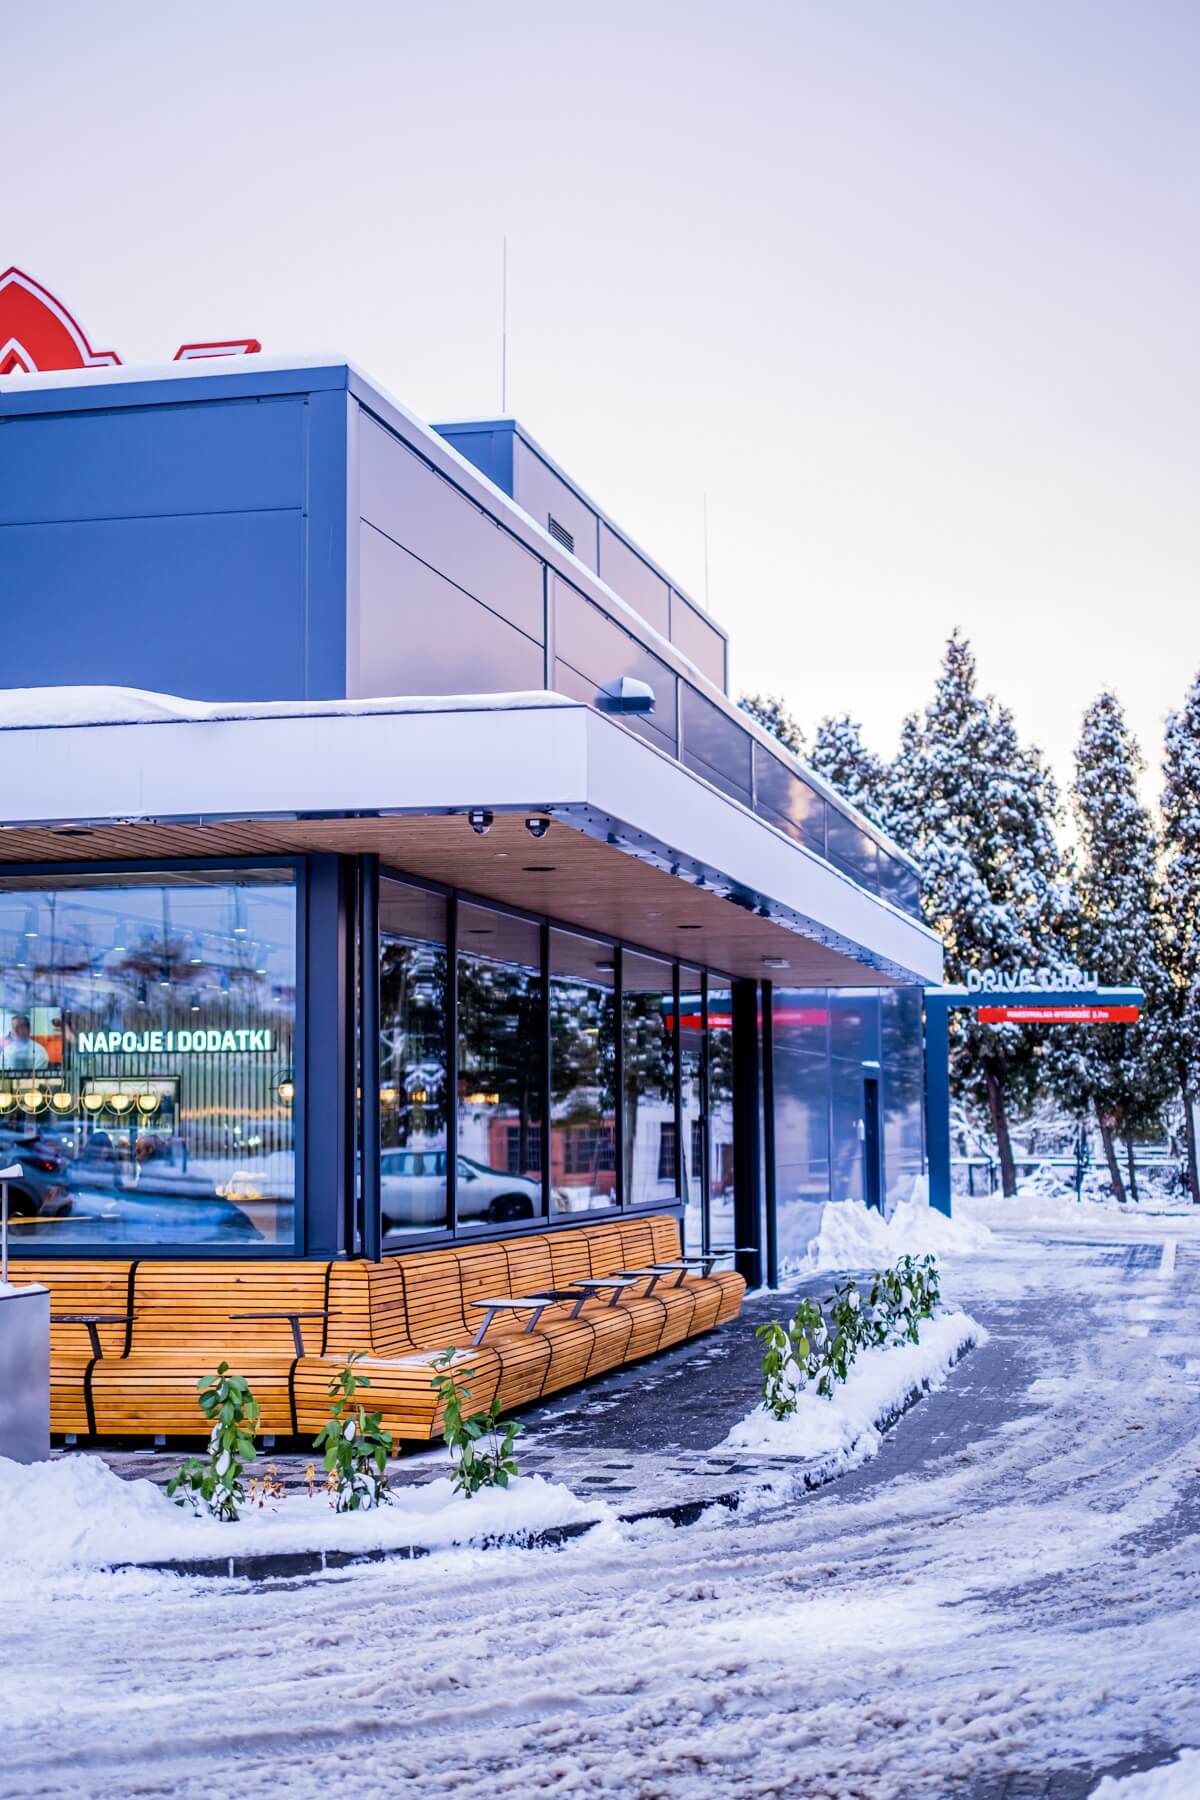 MAX Premium Burgers – szwedzki koncept z burgerami. Dba o środowisko, a jego Zielone Menu cieszy się szaloną popularnością.